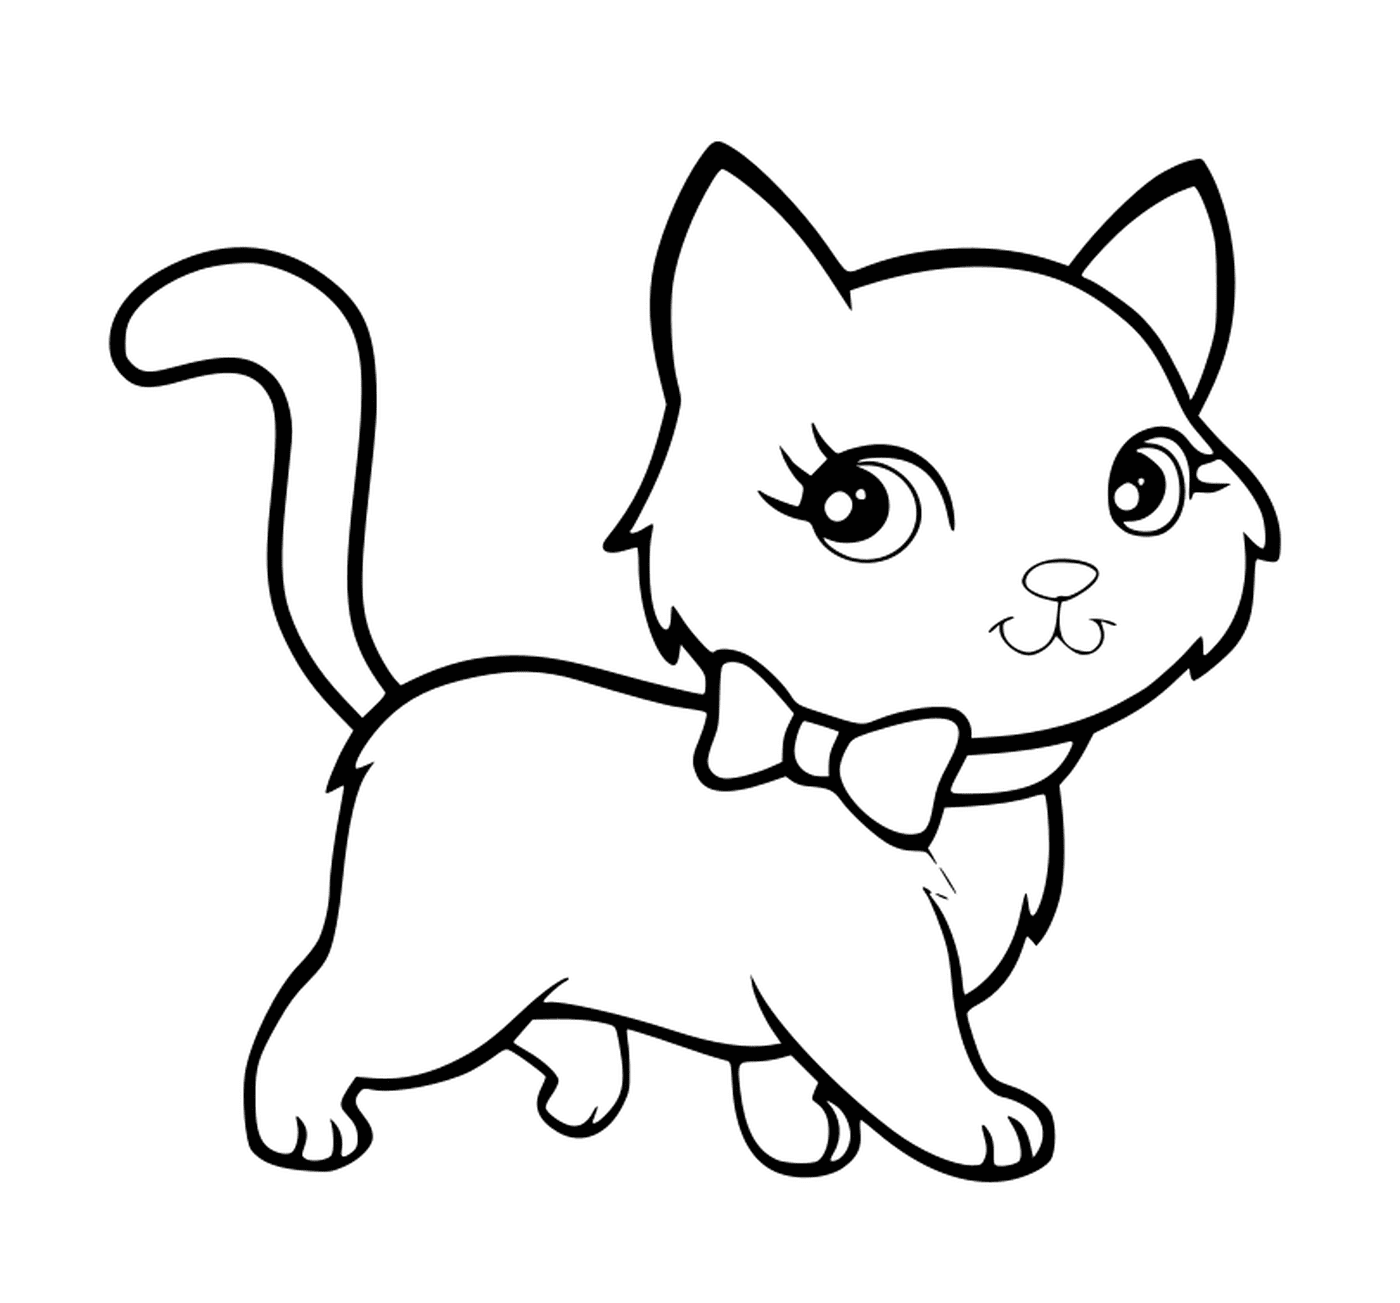   Un chaton kawaii super mignon qui marche avec élégance 